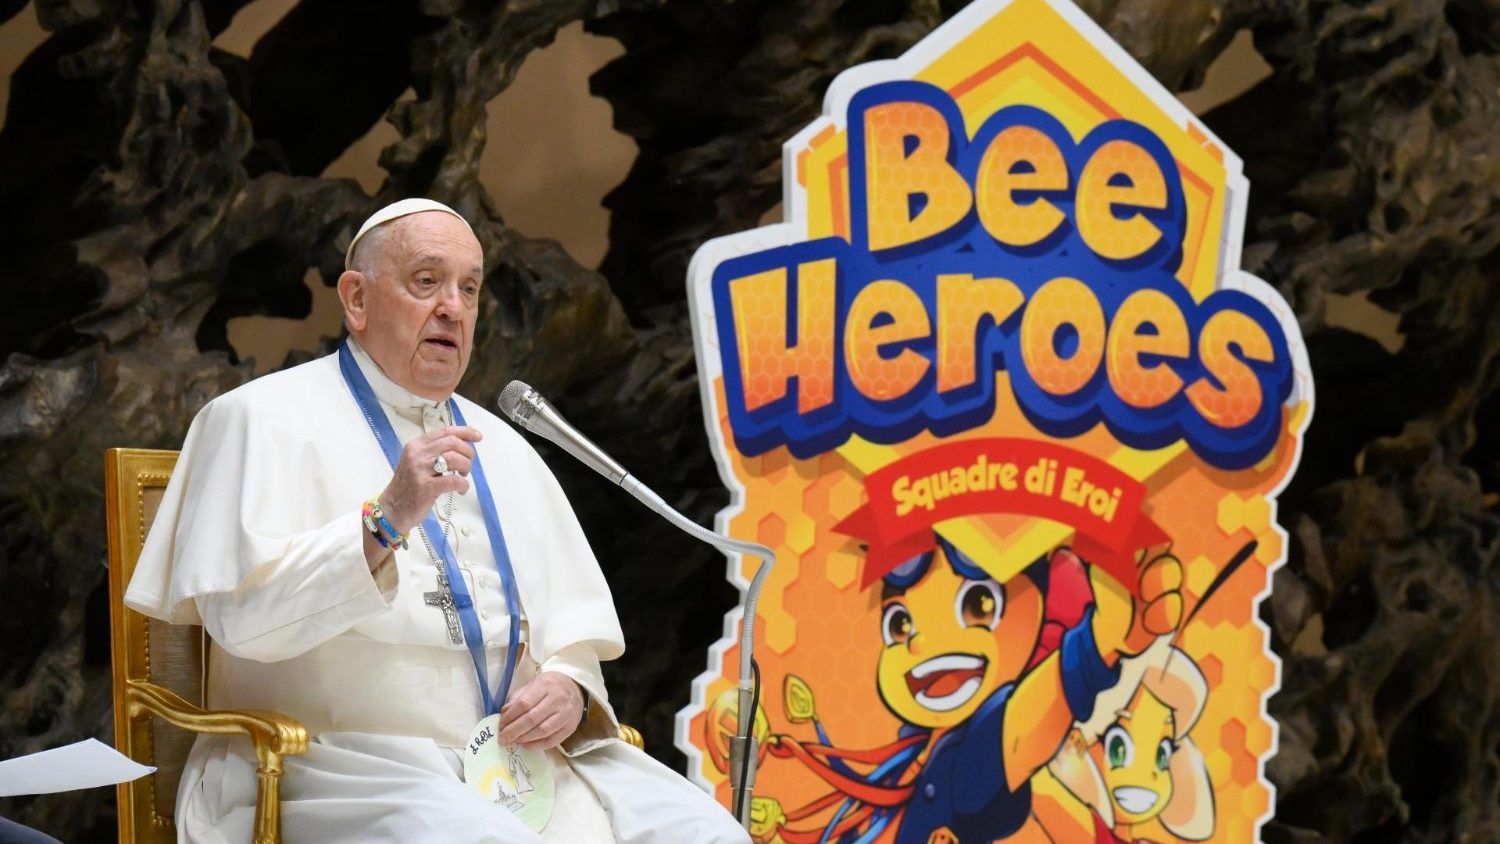 El Papa Francisco ensalza el papel de los abuelos: "Son mis superhéroes"